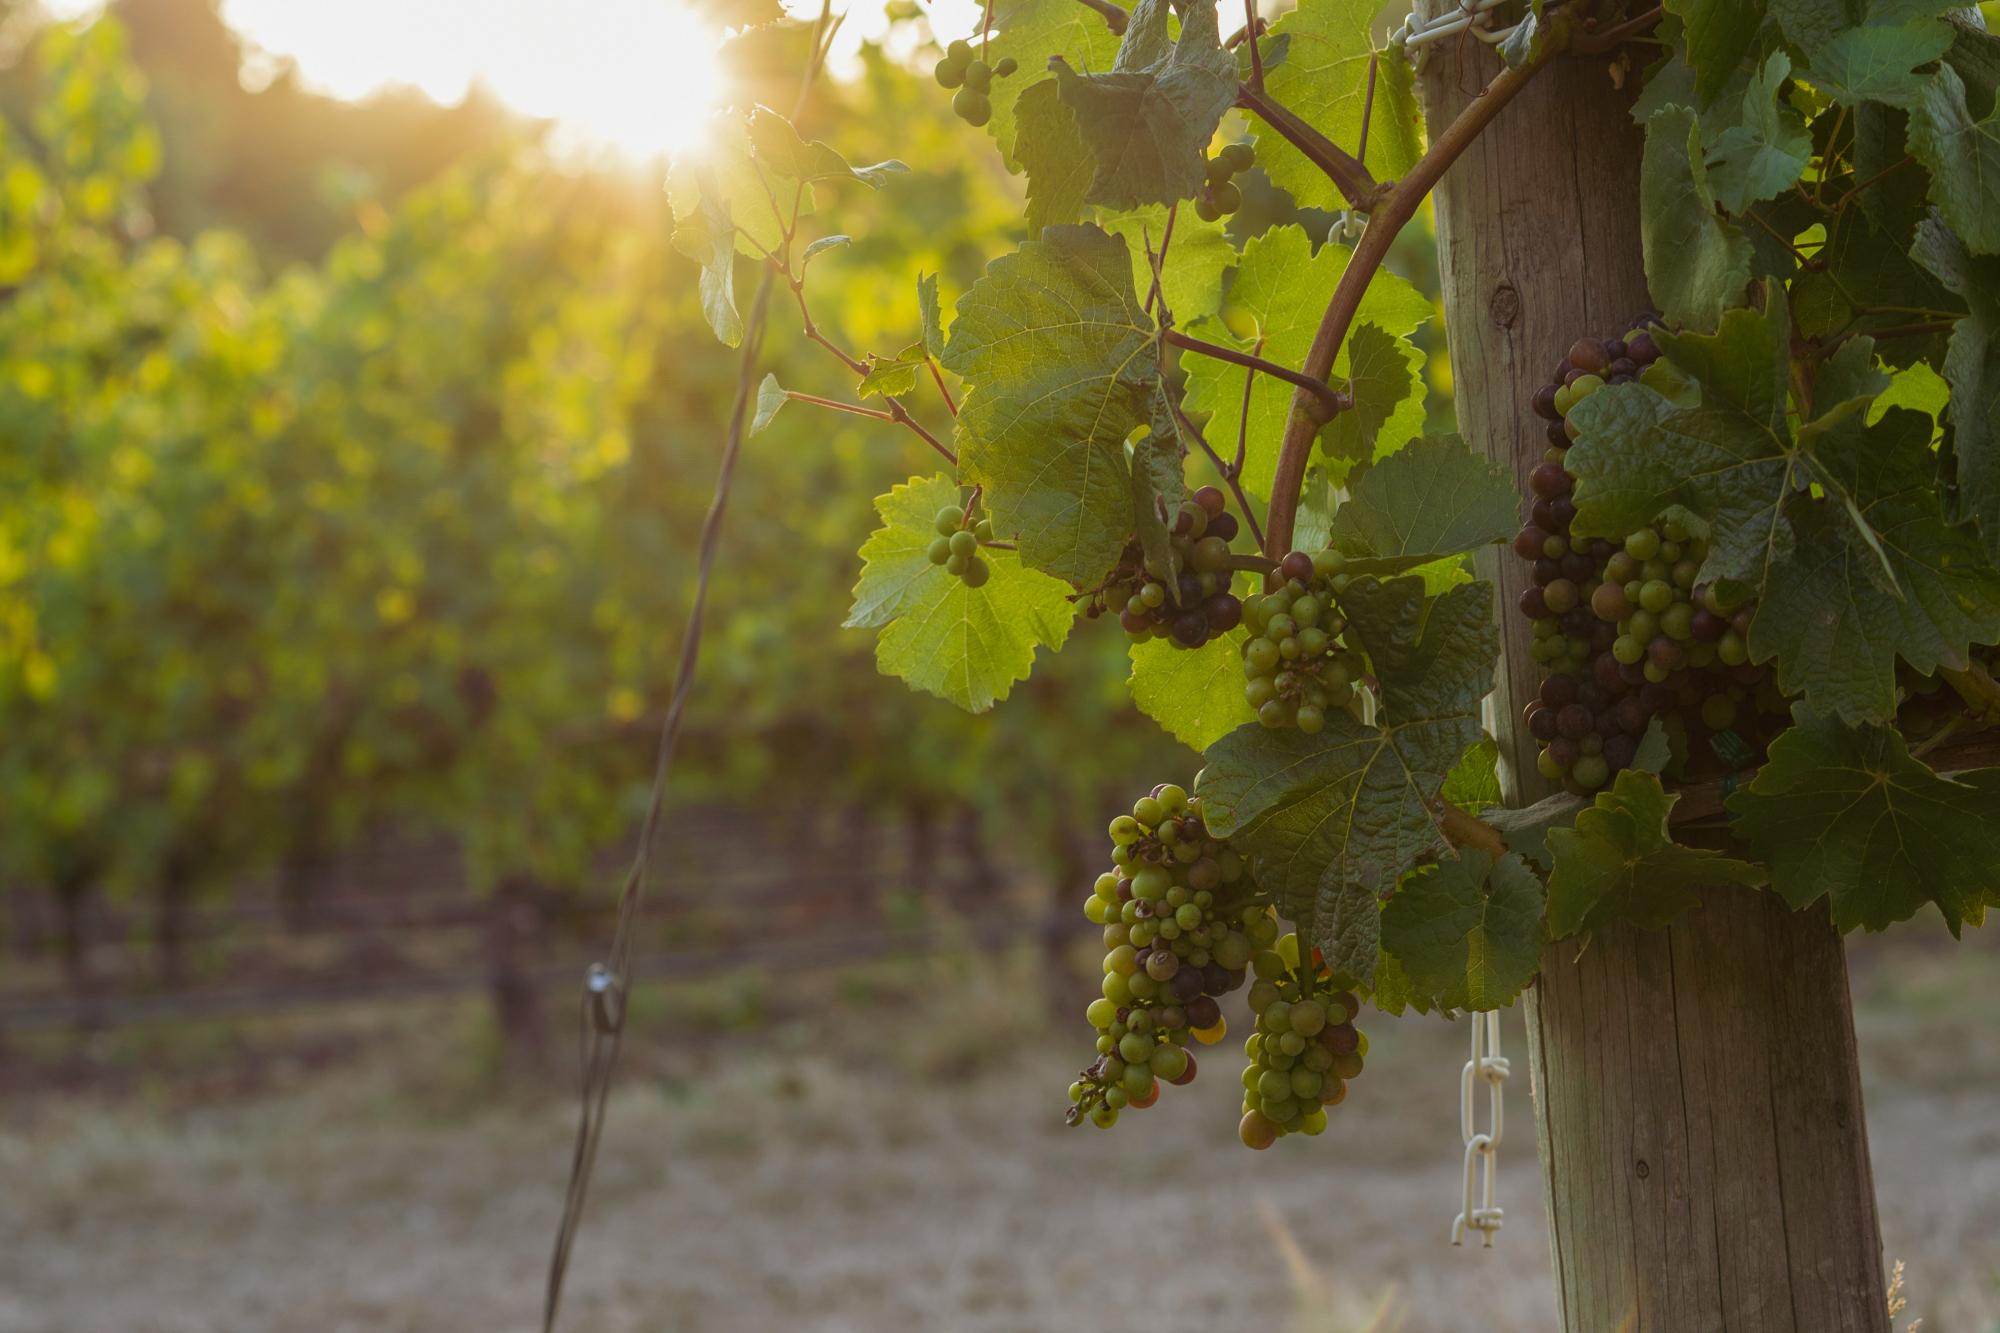 découvrez l'univers de la viticulture, l'art de cultiver la vigne et de produire du vin, à travers ses techniques, son histoire et ses traditions.